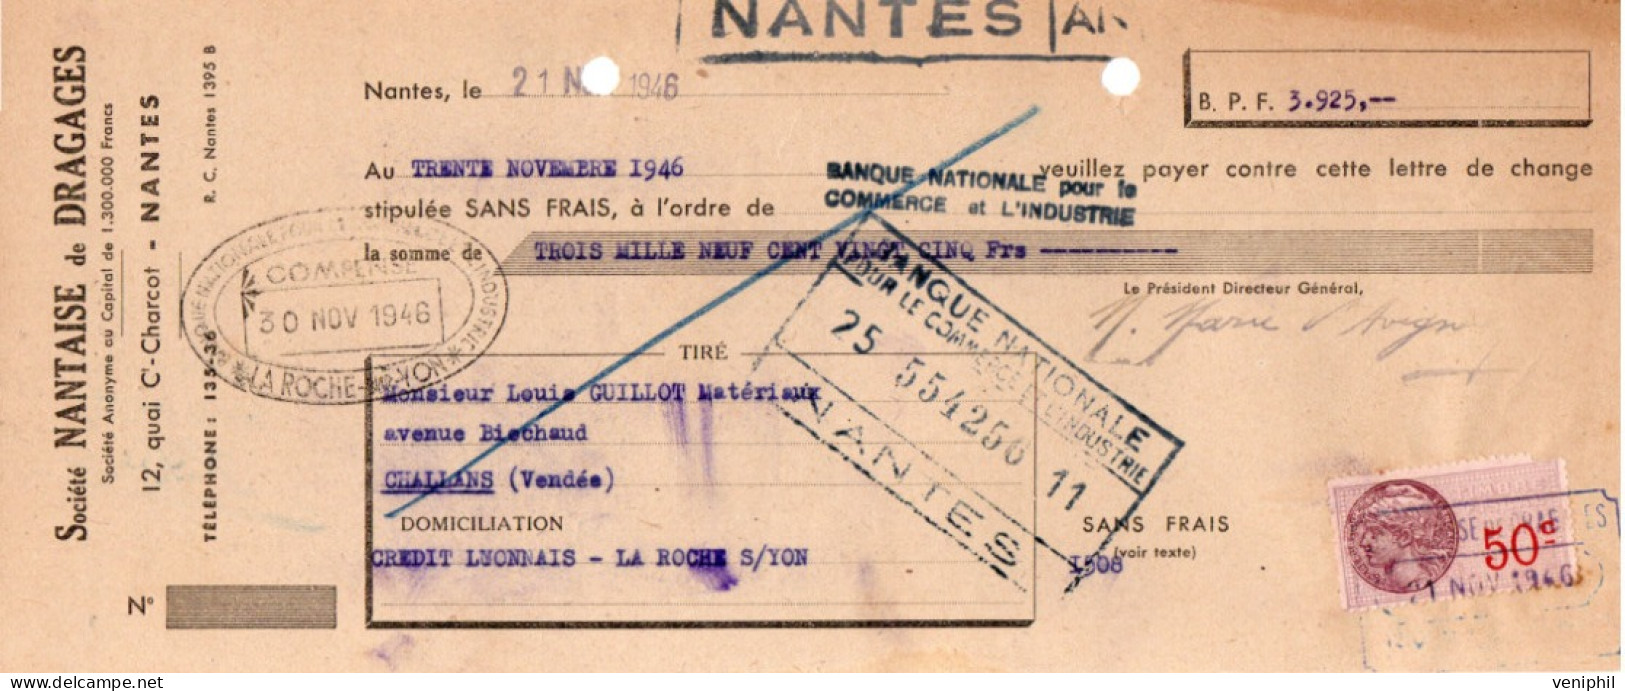 LETTRE  DE CHANGETIMBREE- SOCIETE NANTAISE DE DRAGAGES -NANTES - ANNEE 1946 - Wechsel